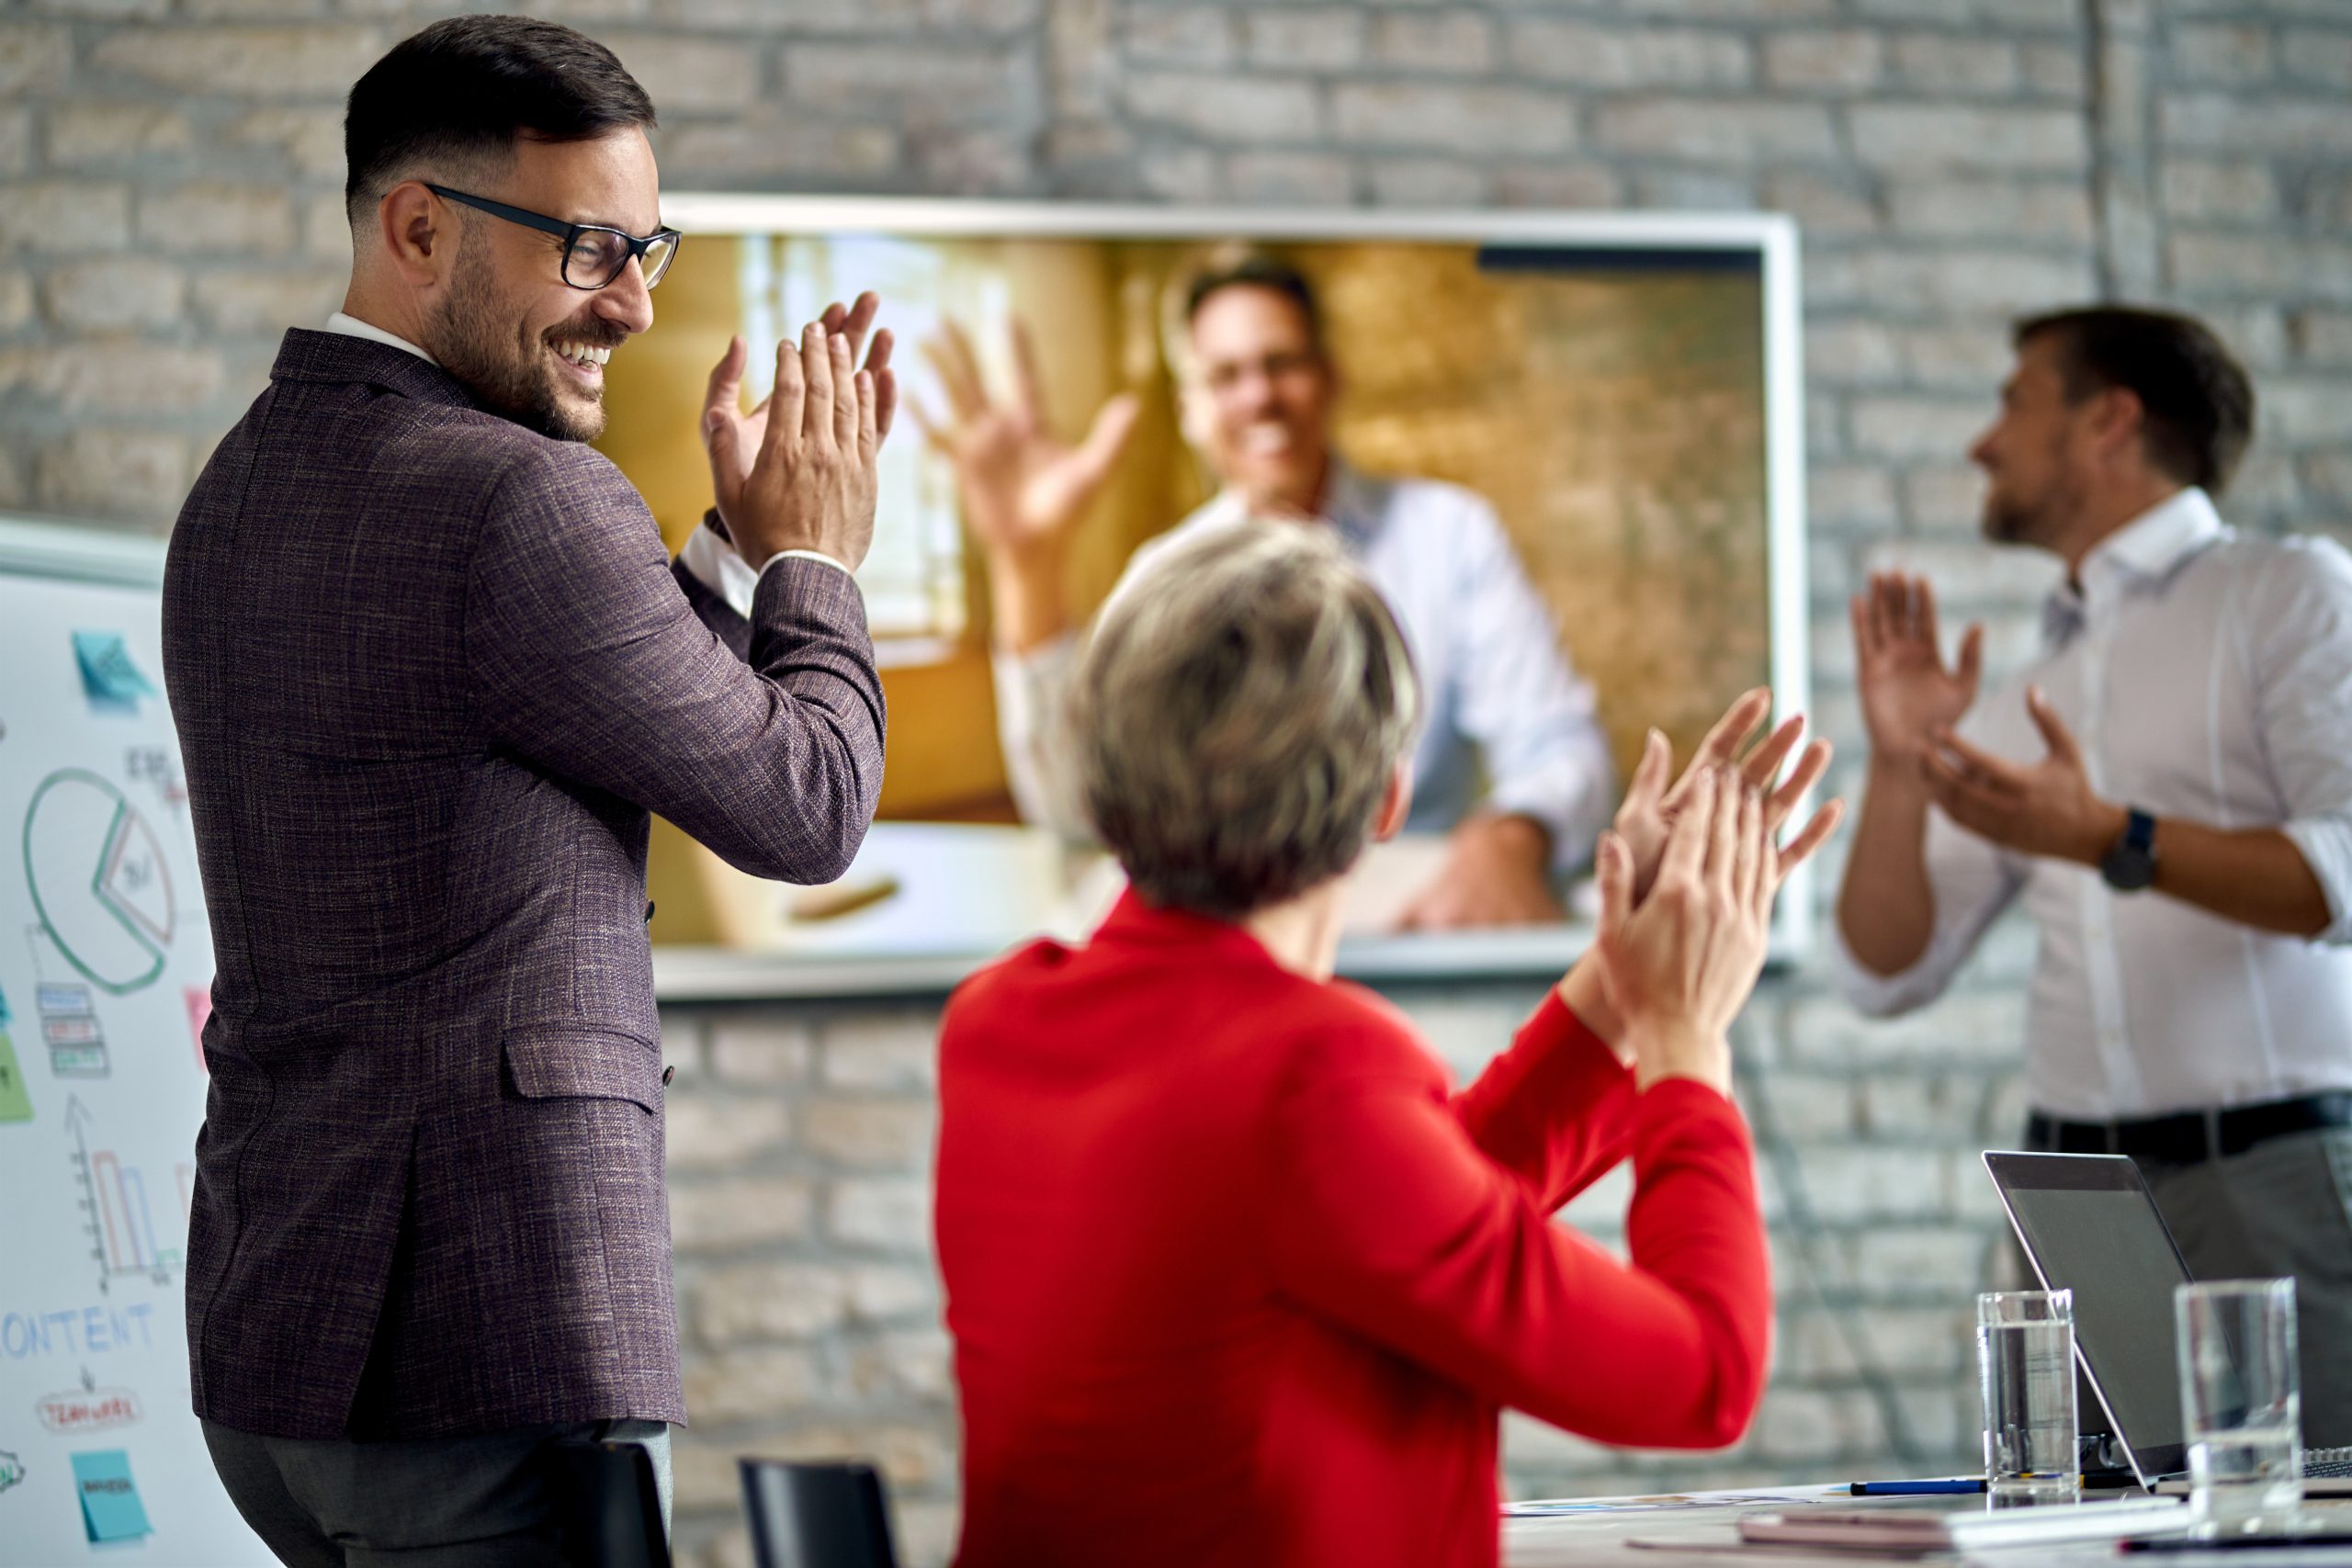 L'immagine mostra 3 persone di fronte a uno schermo dove è proiettato un software di gestione eventi